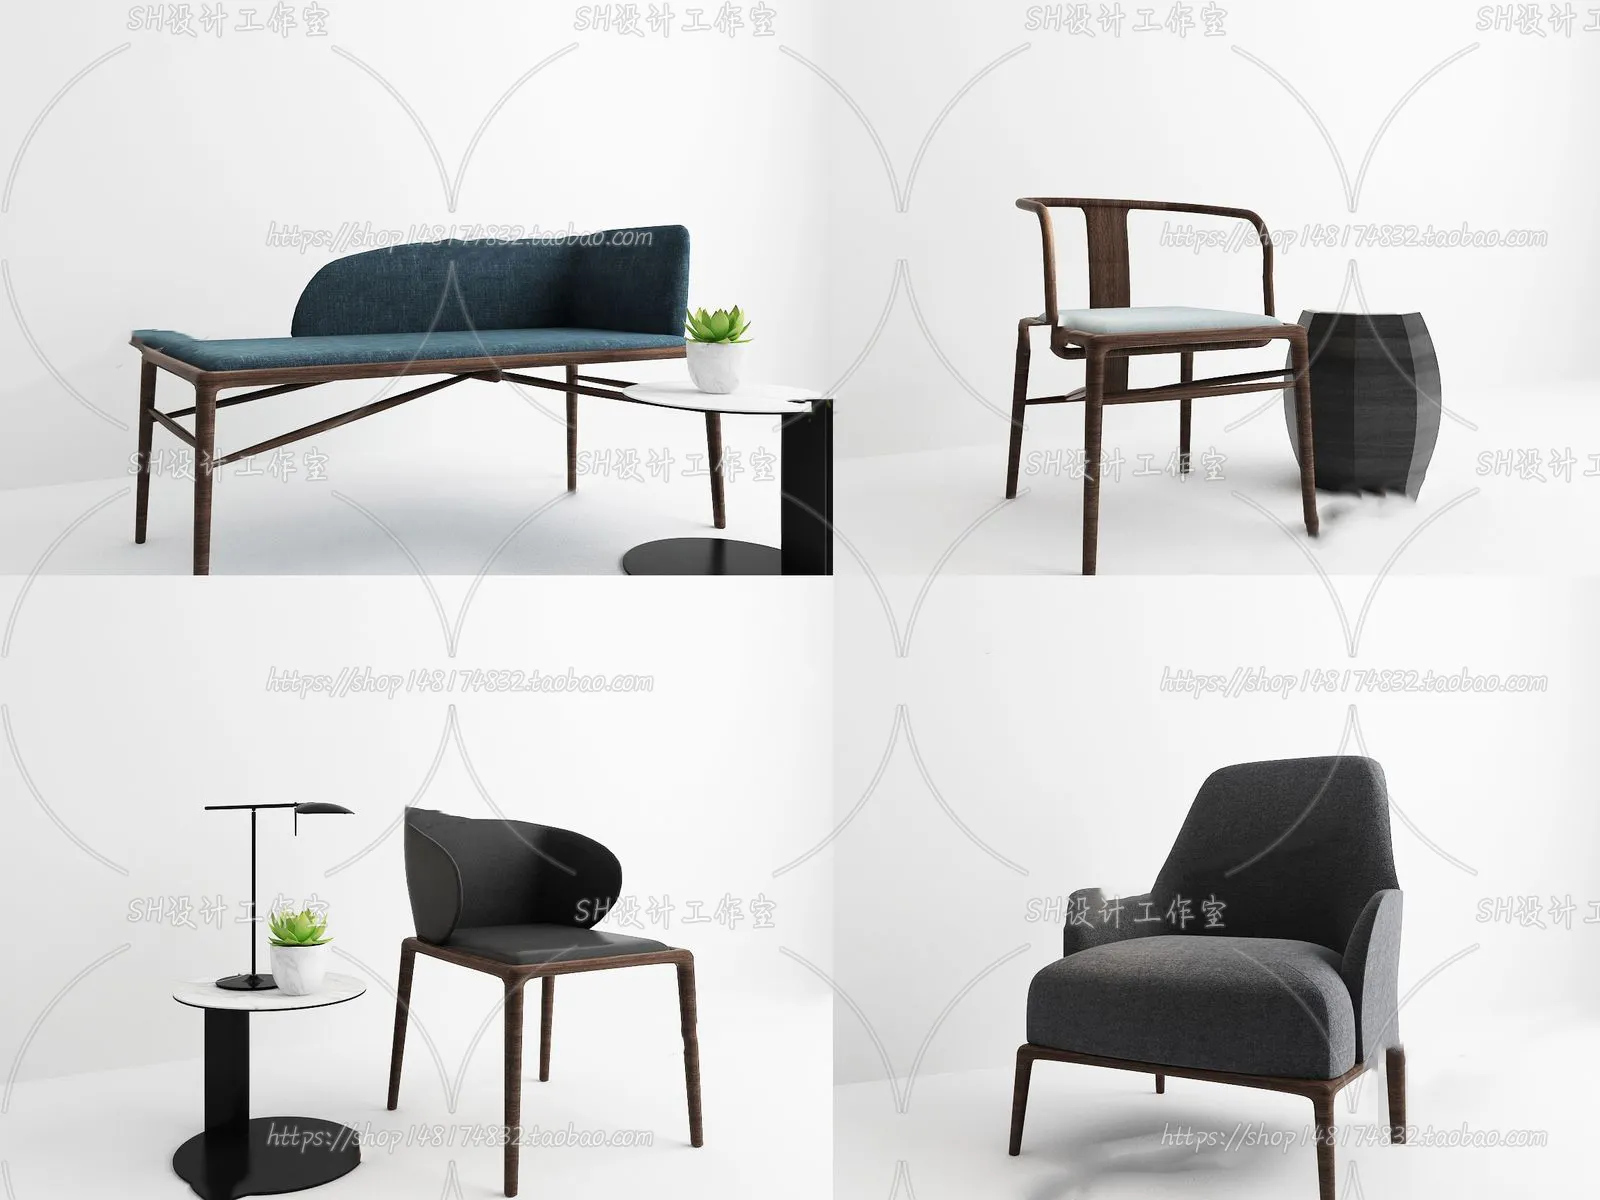 Chair – Single Chair 3D Models – 2016